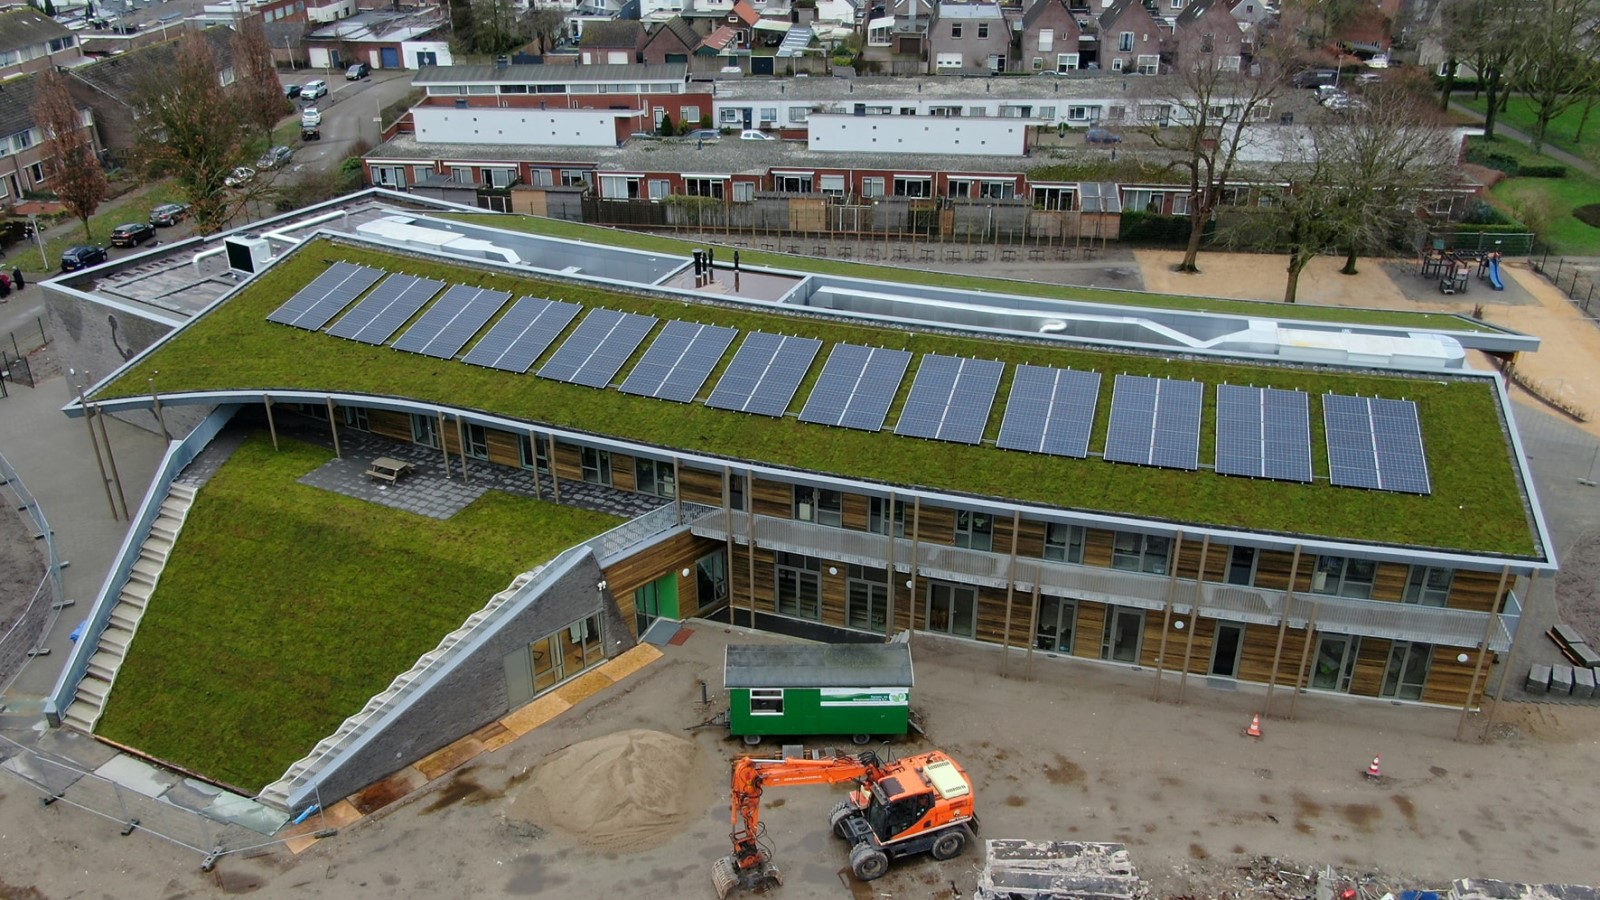 Das Zanddonk Kinderzentrum in Waalwijk, Niederlande nutzt die Sempergreen-Gesamtbegrünungslösungen sowohl auf Flach- als auch auf Schrägdächern. Foto: Airpro Waalwijk